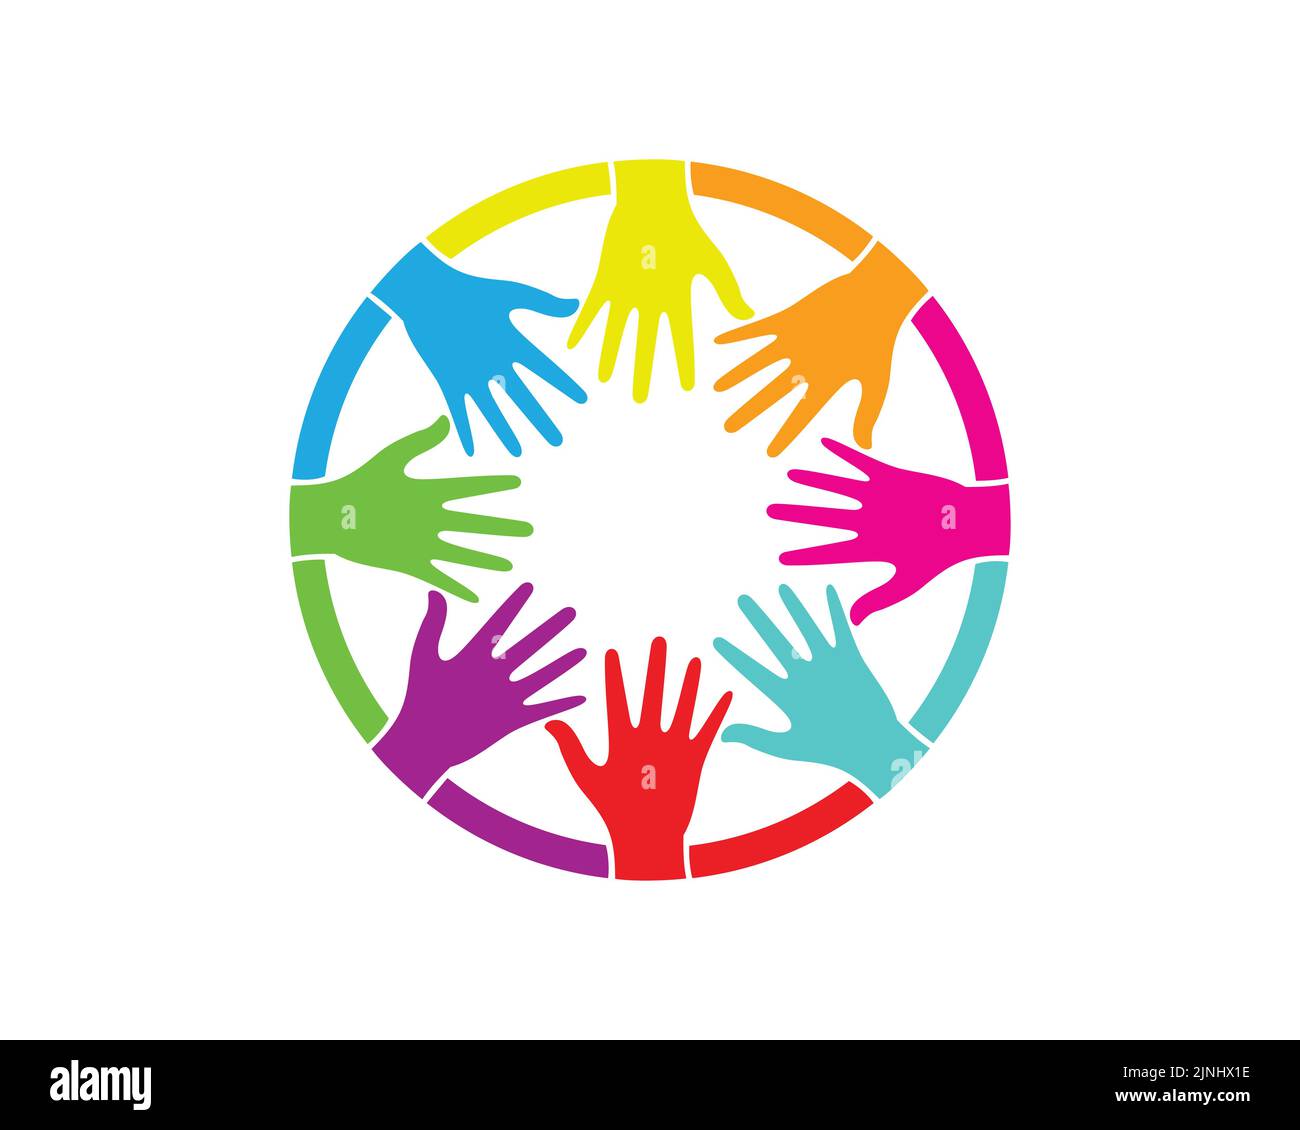 Groupe de mains de couleur colorée formant une illustration de forme de cercle Illustration de Vecteur